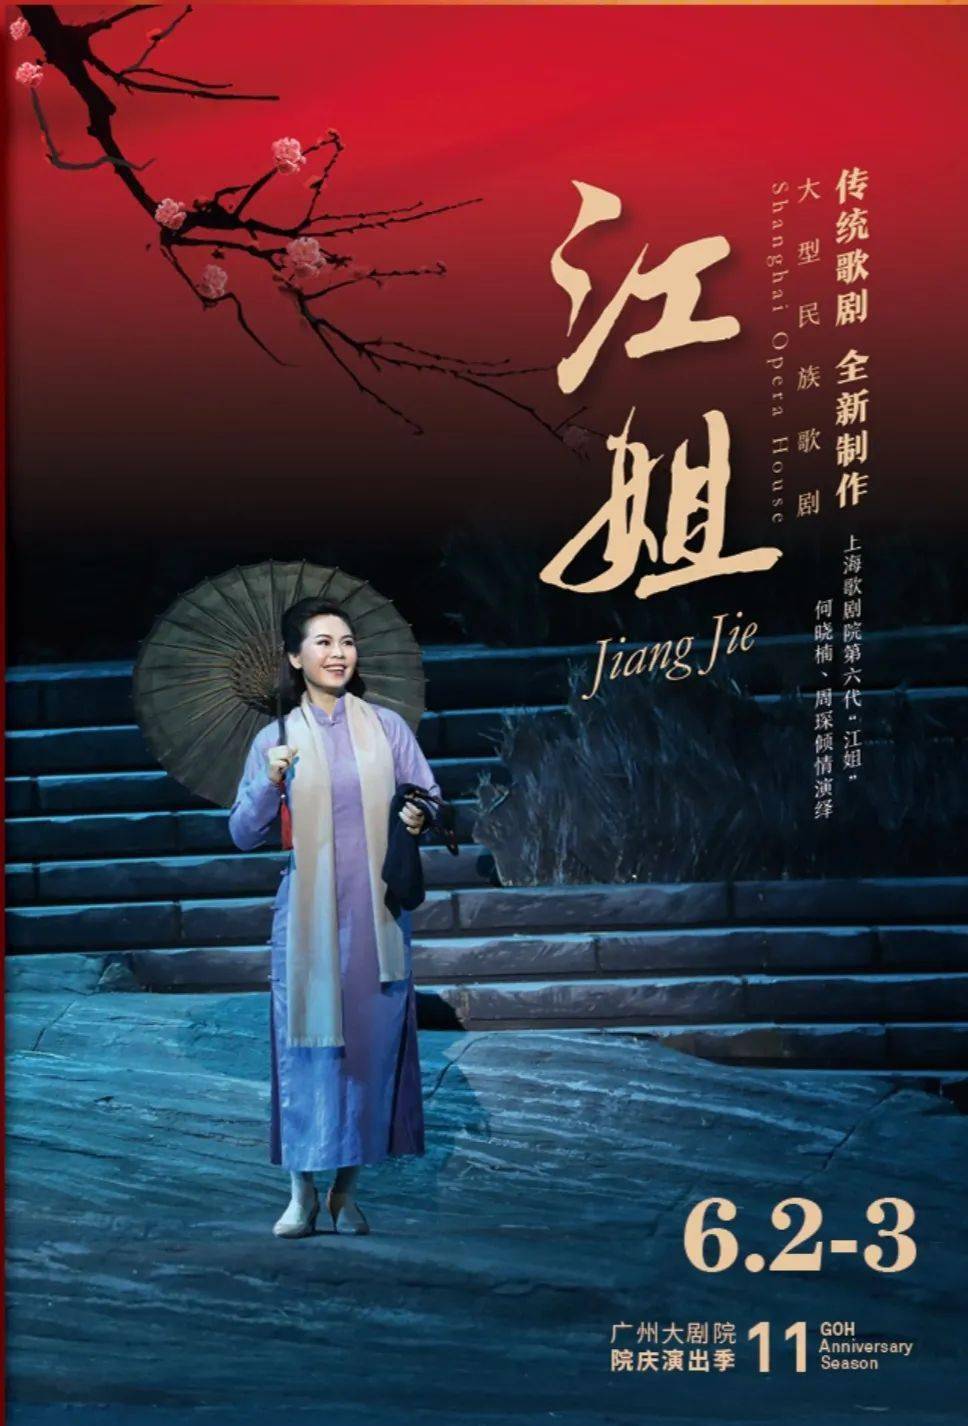 上海歌剧院 歌剧《江姐》